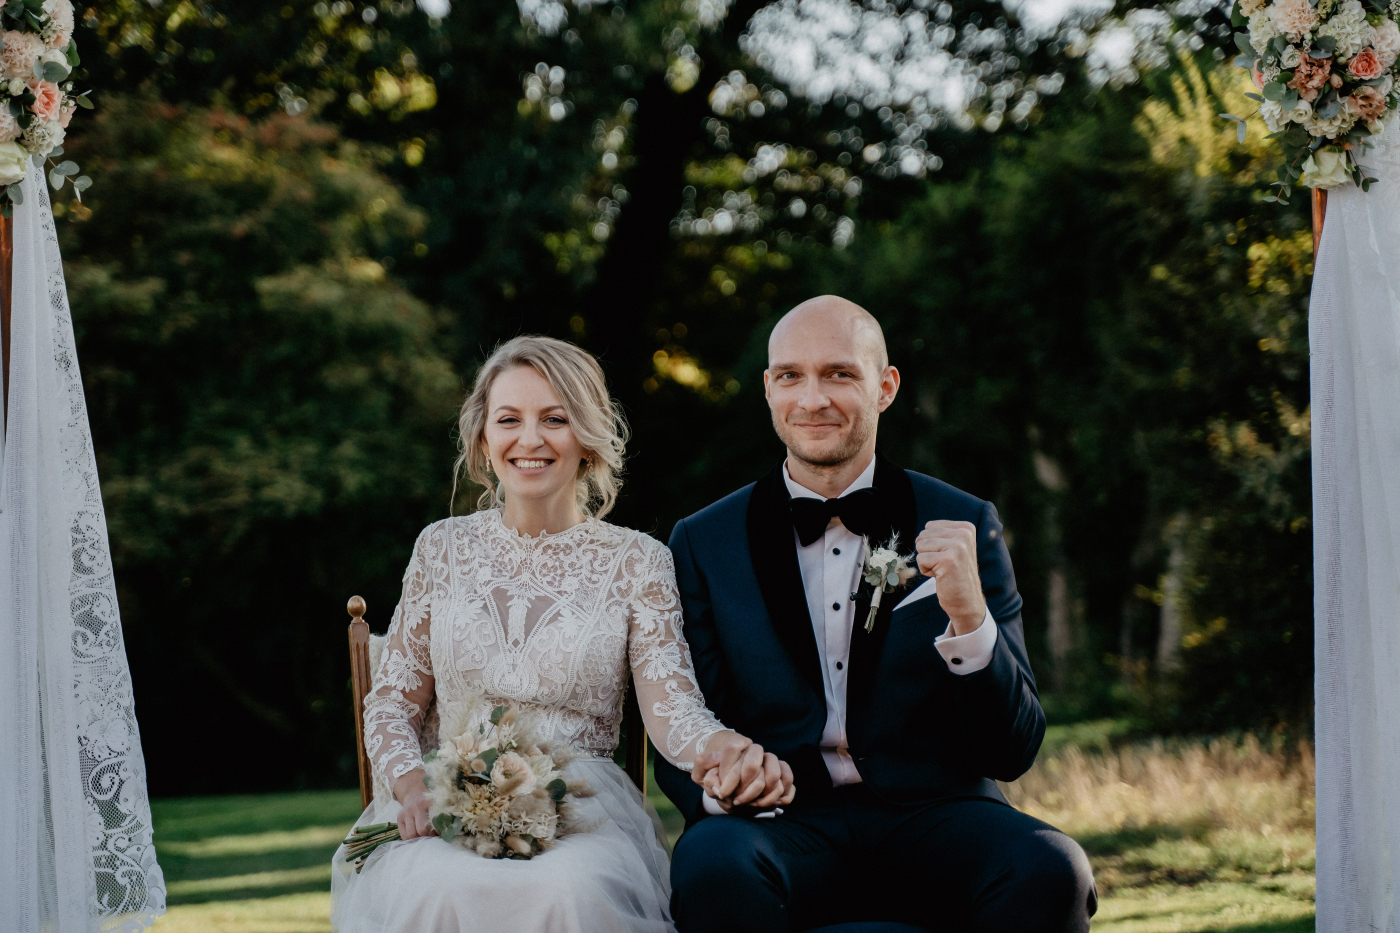 Emotionales Brautpaar unter Hochzeitsbogen, Hand in Hand, nach Hochzeitszeremonie im Garten. Bräutigam zeigt Freude.